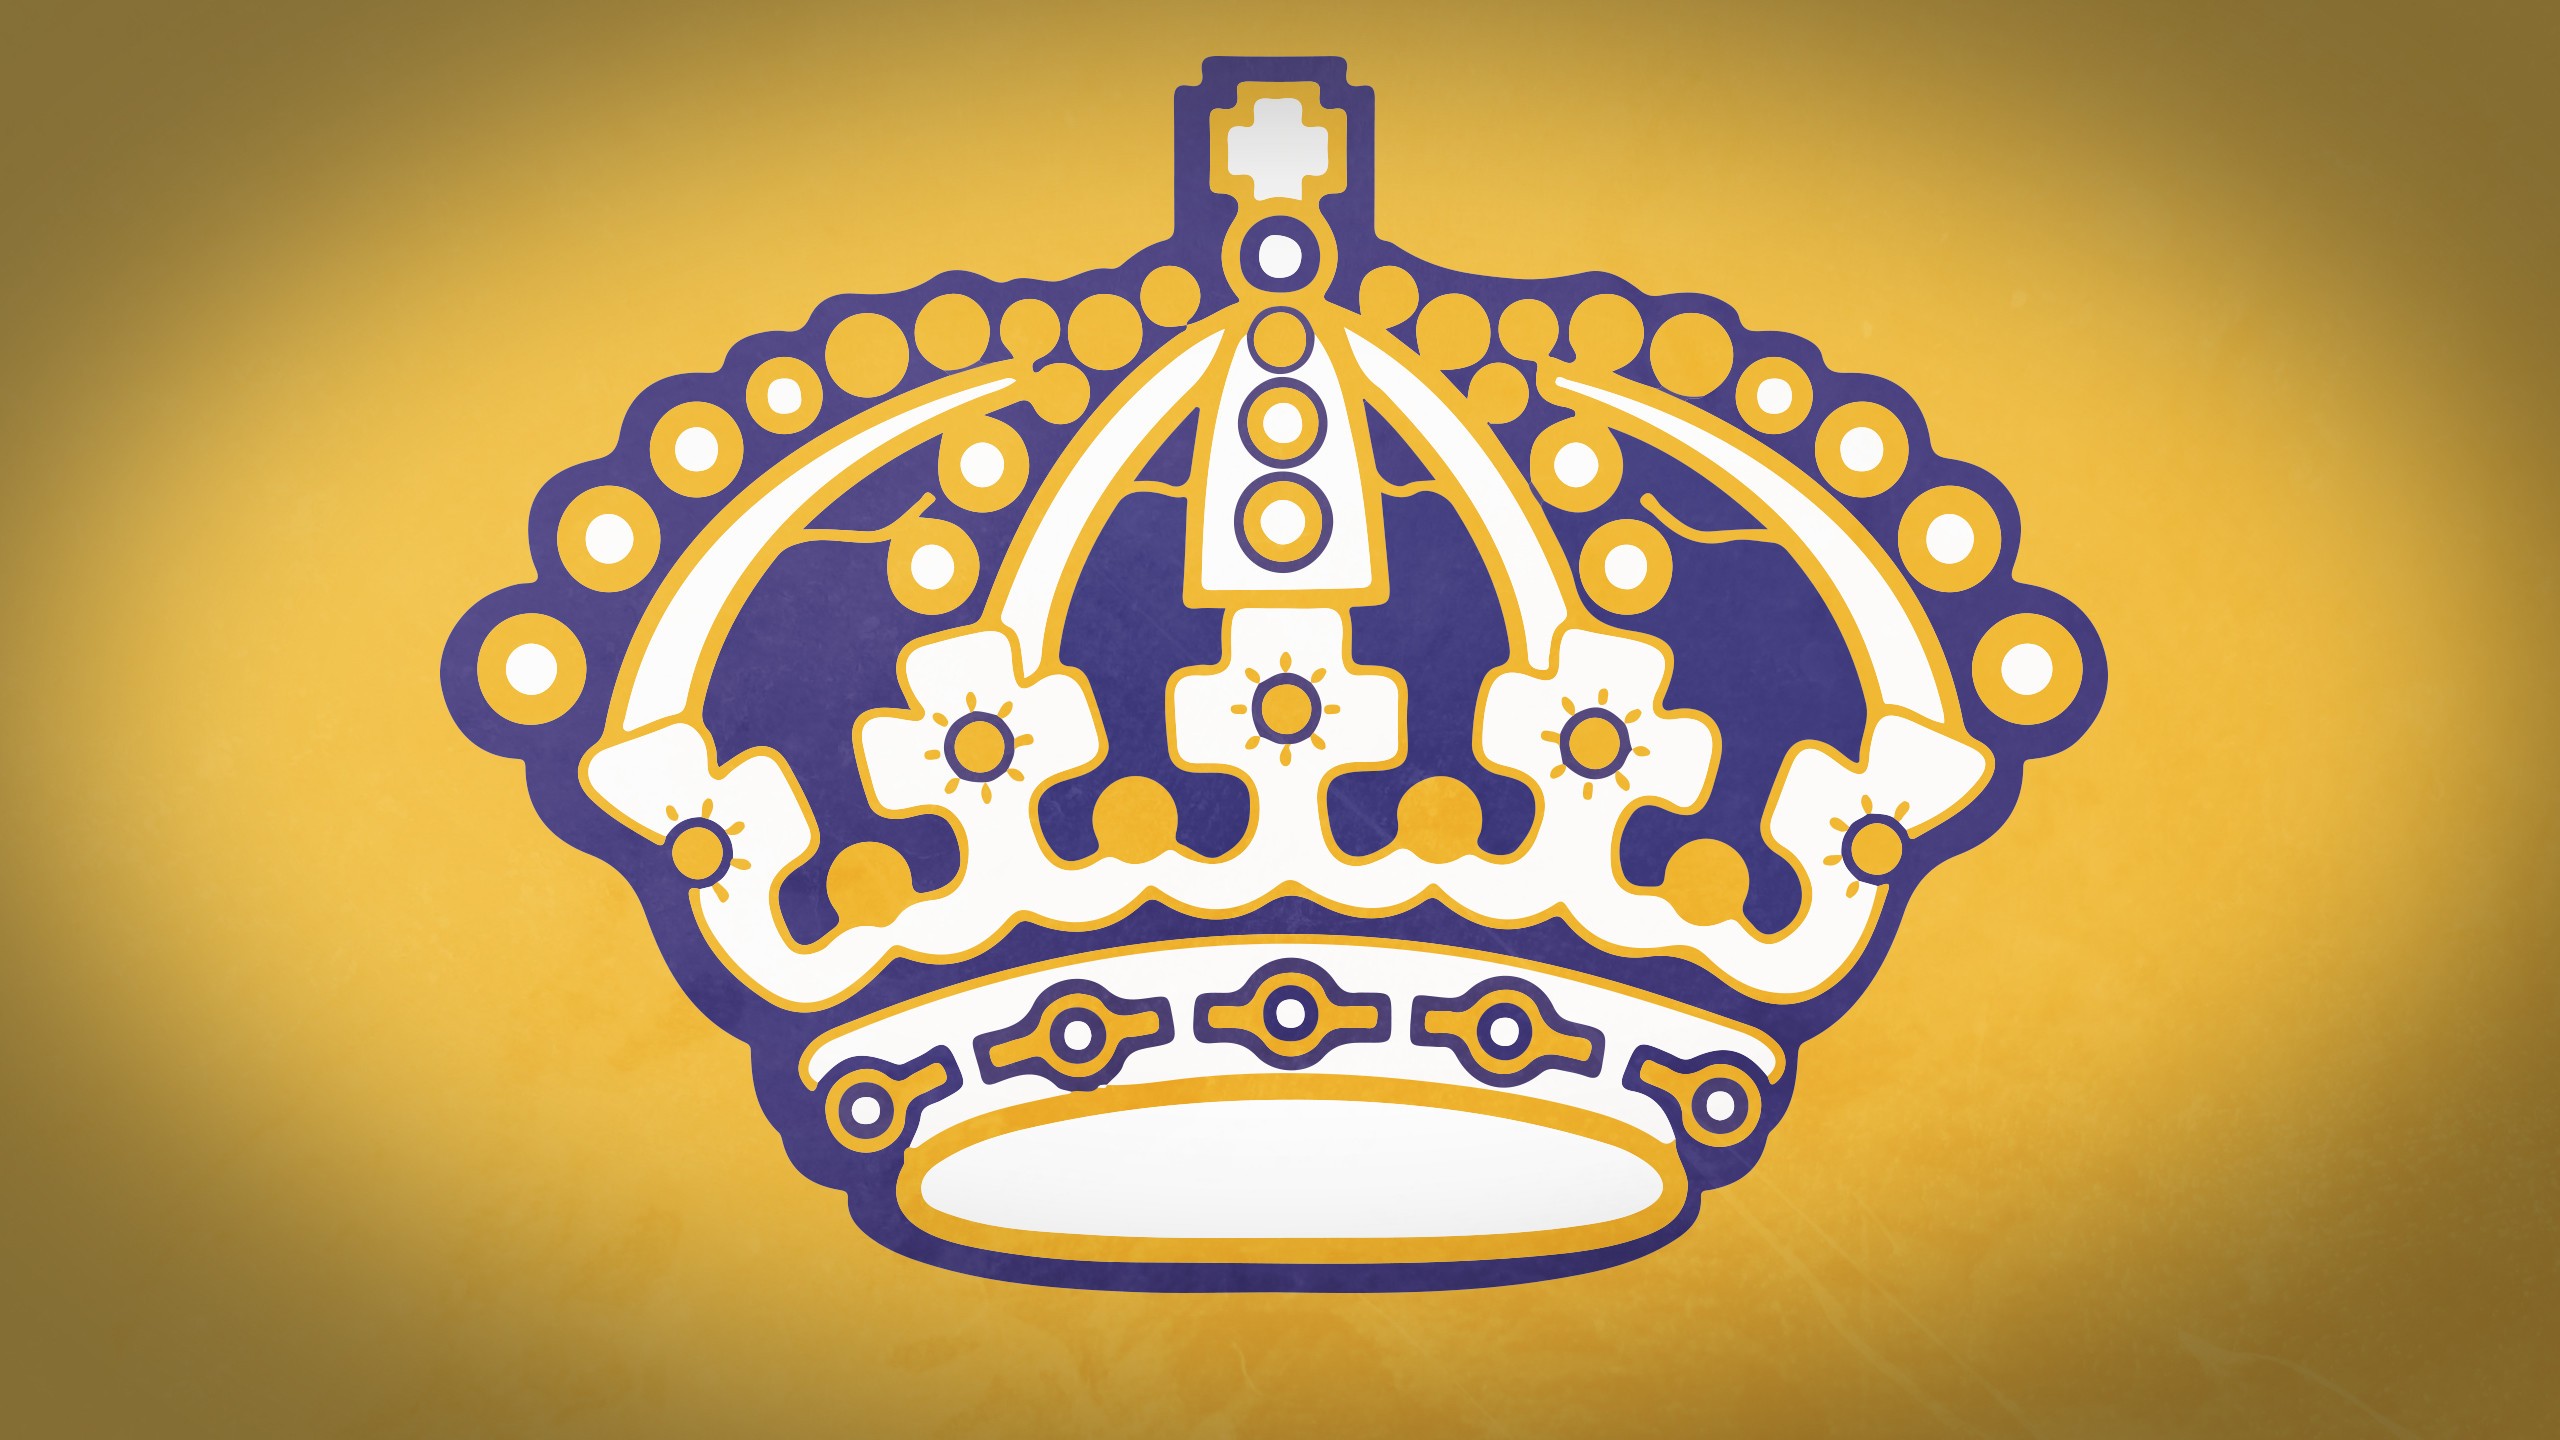 Los Angeles Kings 011 NHL, Hokej, Logo